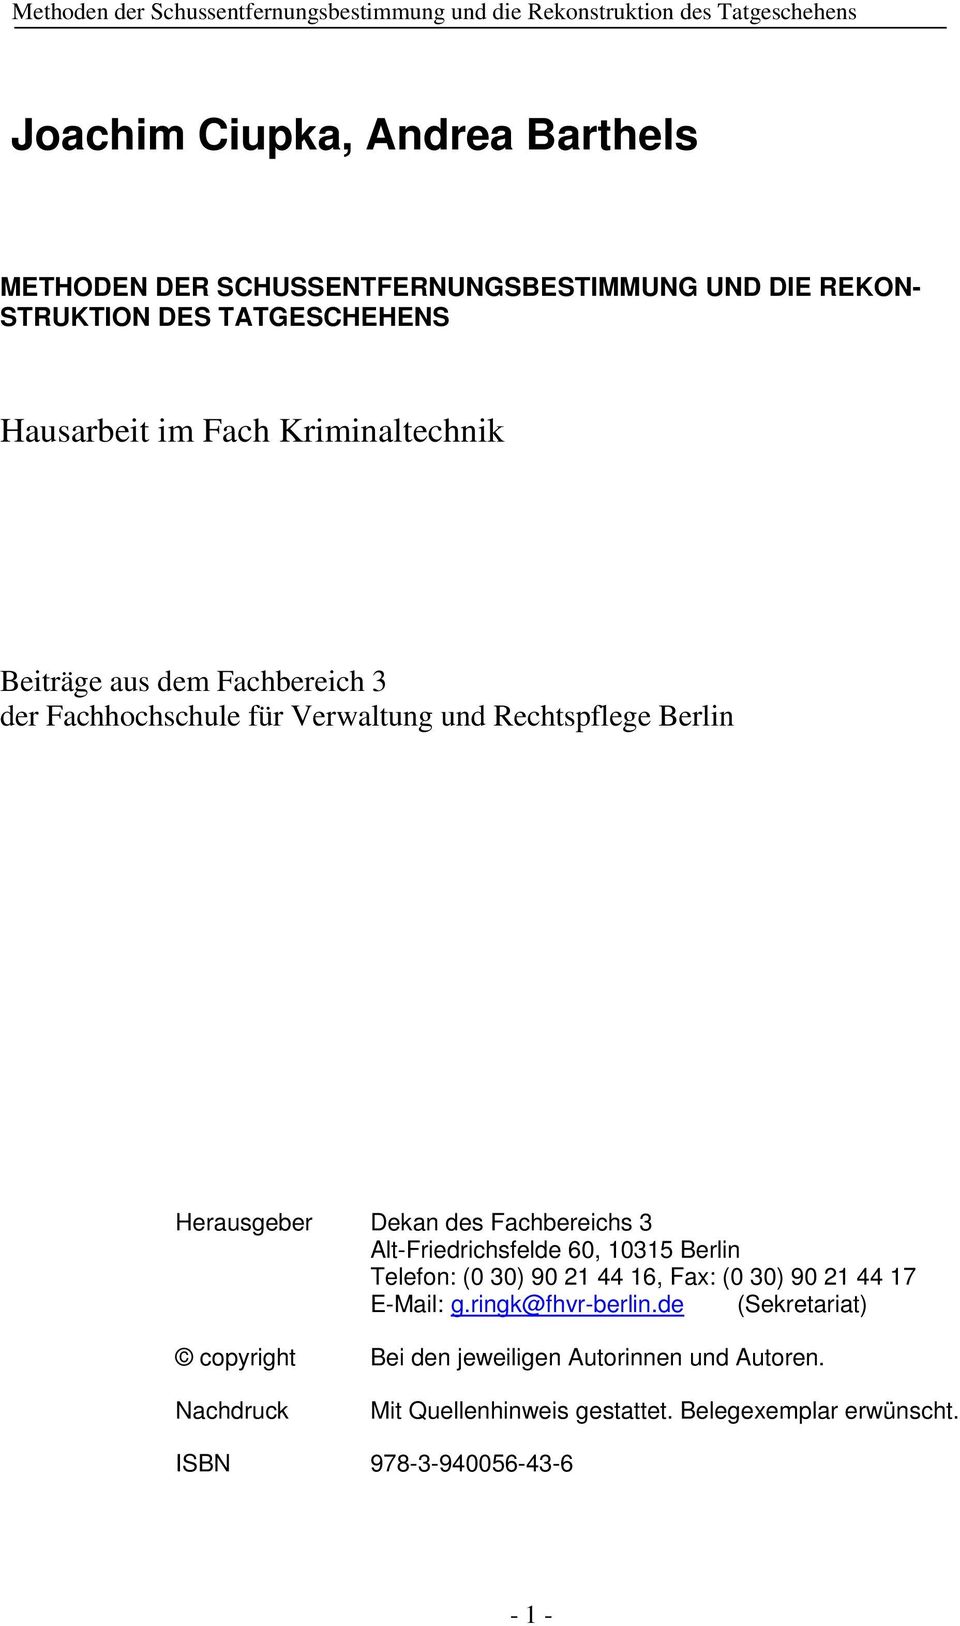 Fachbereichs 3 Alt-Friedrichsfelde 60, 10315 Berlin Telefon: (0 30) 90 21 44 16, Fax: (0 30) 90 21 44 17 E-Mail: g.ringk@fhvr-berlin.